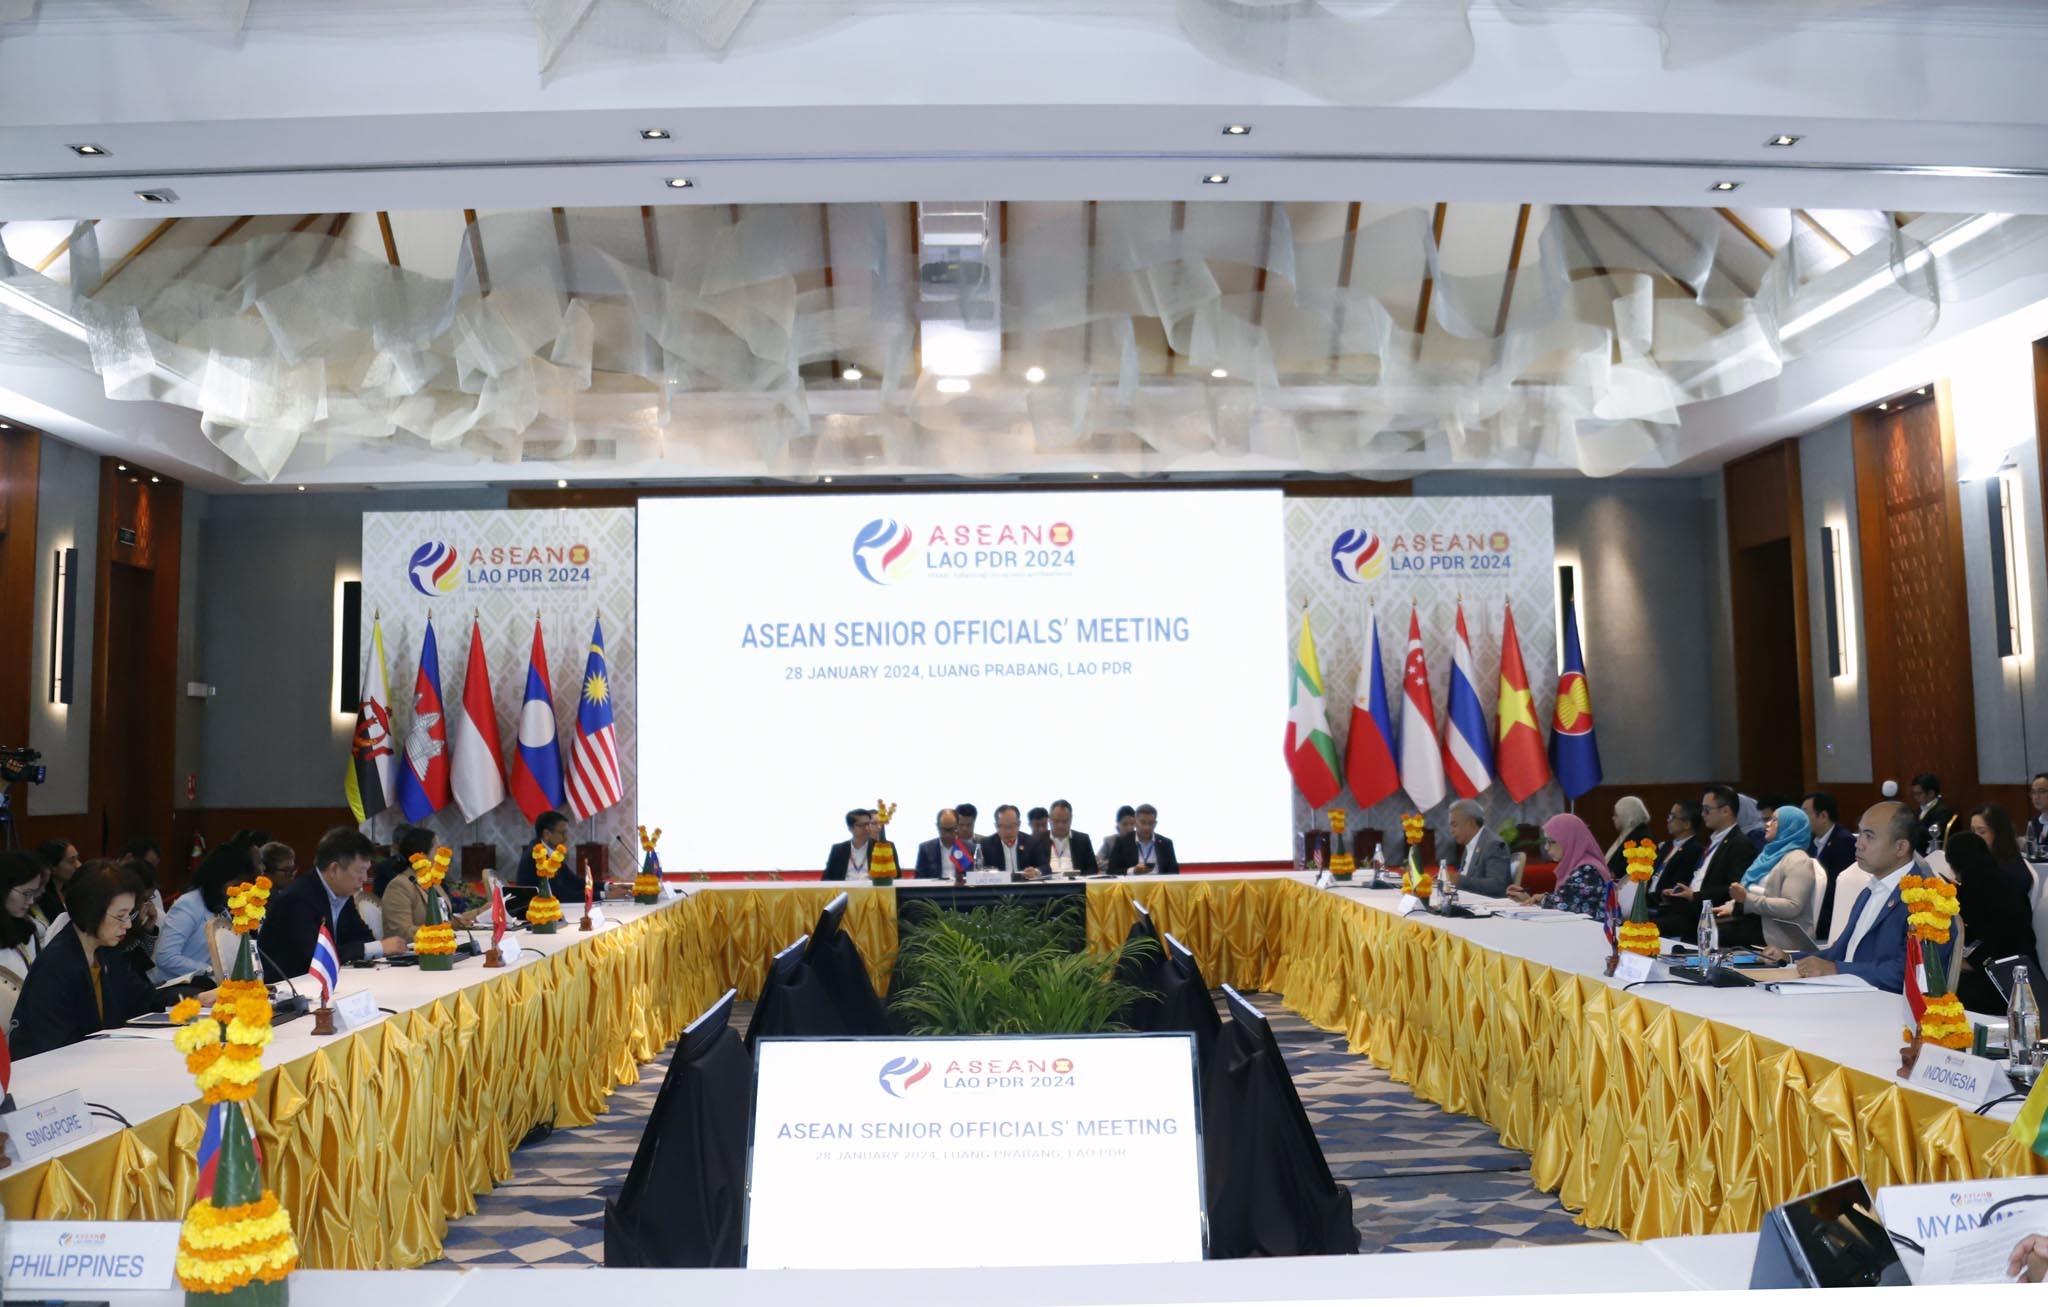 Sẵn sàng cho hành trình mới của ASEAN trong năm 2024